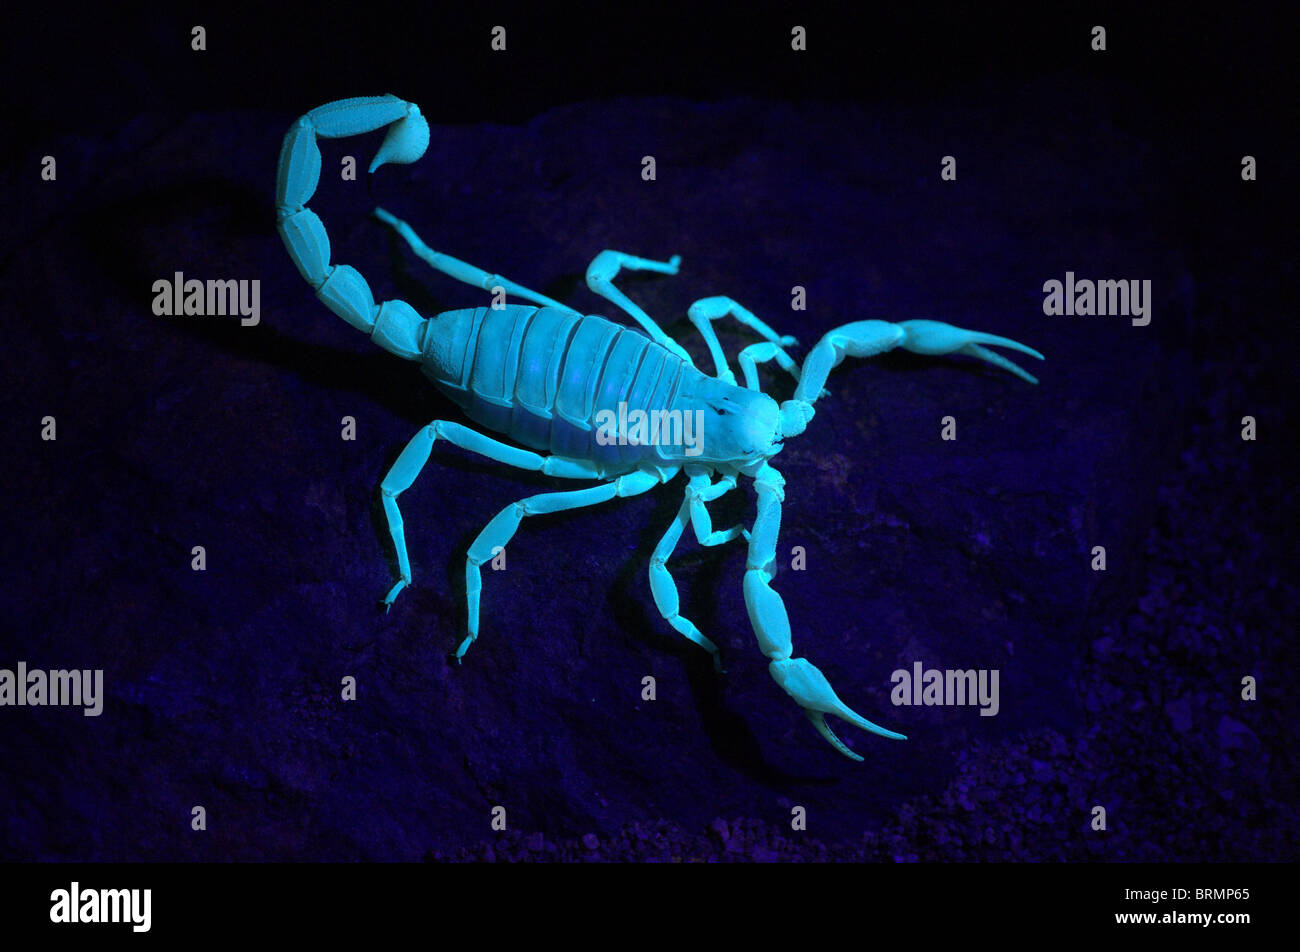 Giant Hairy Scorpion fluorescente sotto la luce nera di notte. Foto Stock